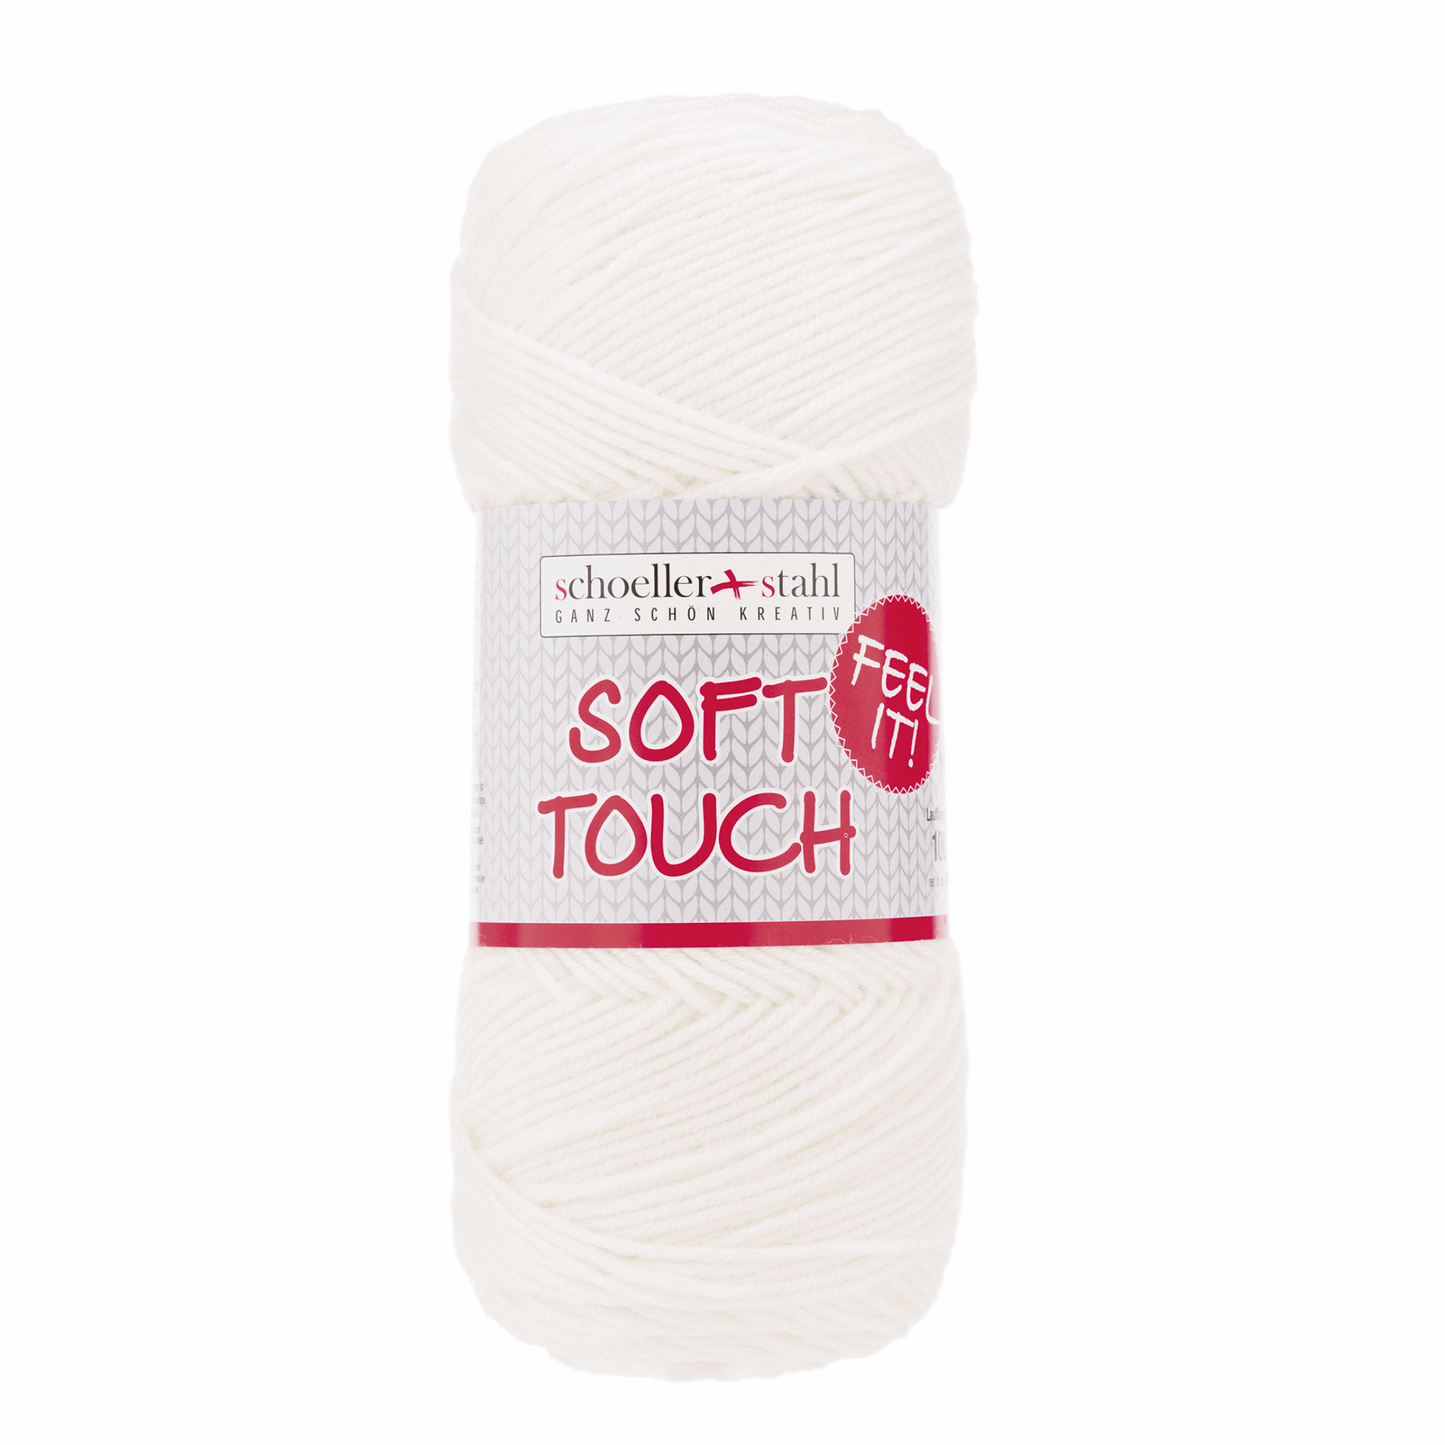 Soft touch 100g pullskin, 90283, Farbe 1, weiß